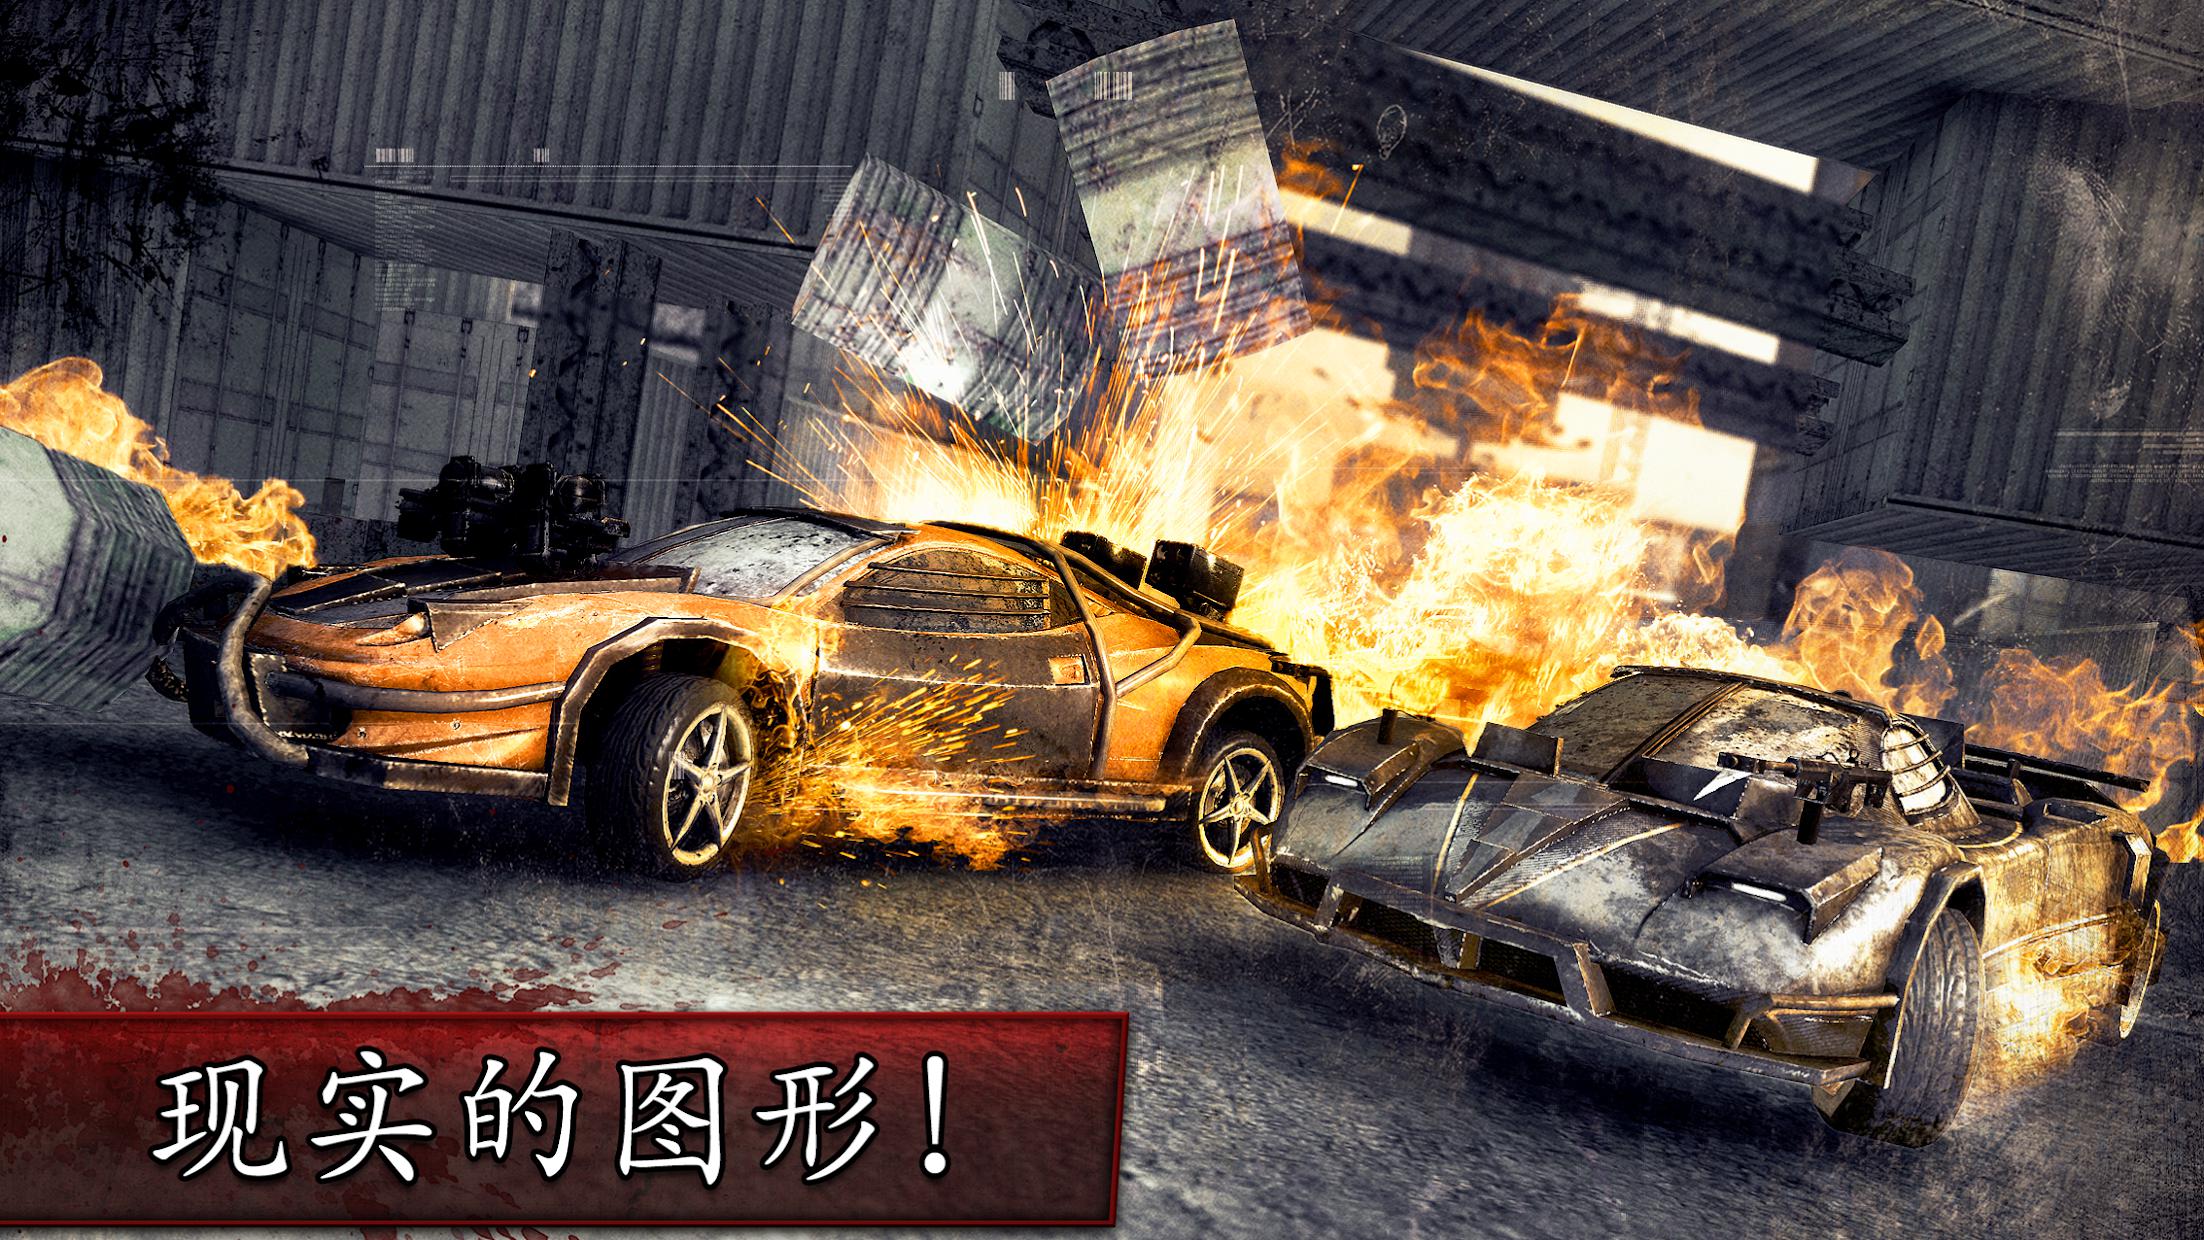 死亡竞赛® - 赛车的射击游戏 - Death Race ® - Shooter Game